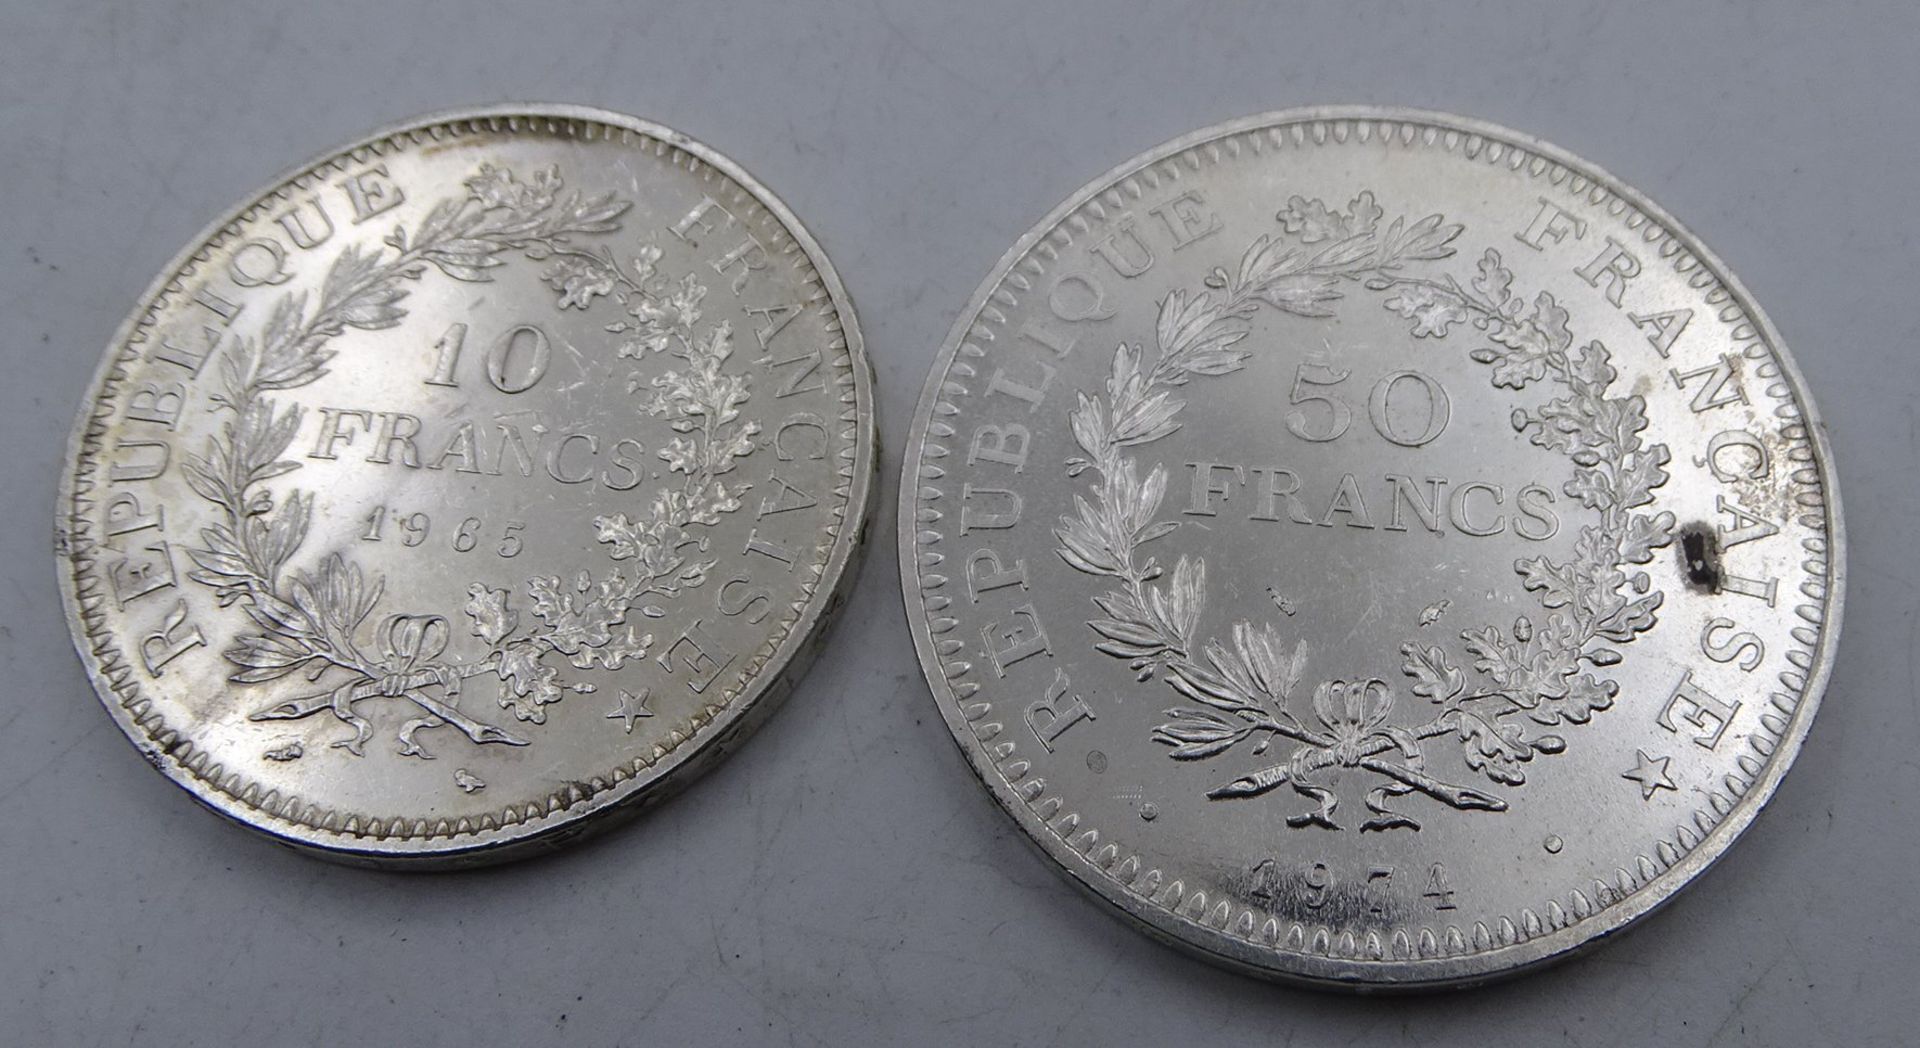 2x Silber-Münzen, Frankreich, 50 Franc 1974, 10 Franc 1965, zus. 54,7 gr. - Bild 2 aus 2